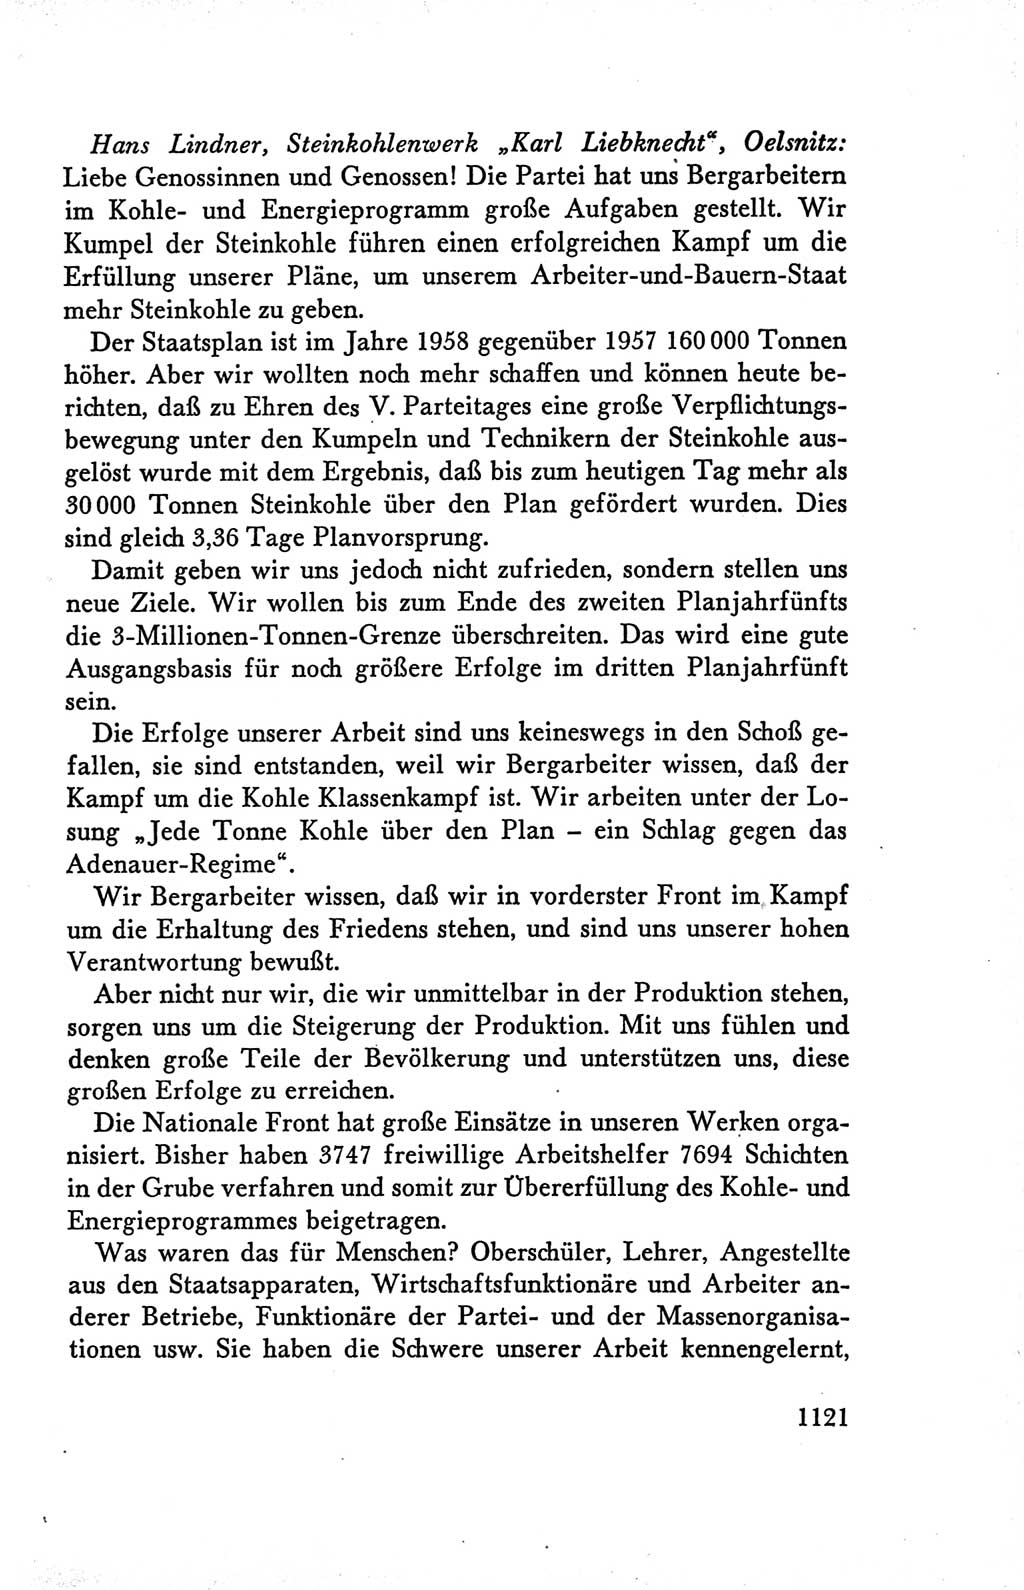 Protokoll der Verhandlungen des Ⅴ. Parteitages der Sozialistischen Einheitspartei Deutschlands (SED) [Deutsche Demokratische Republik (DDR)] 1958, Seite 1121